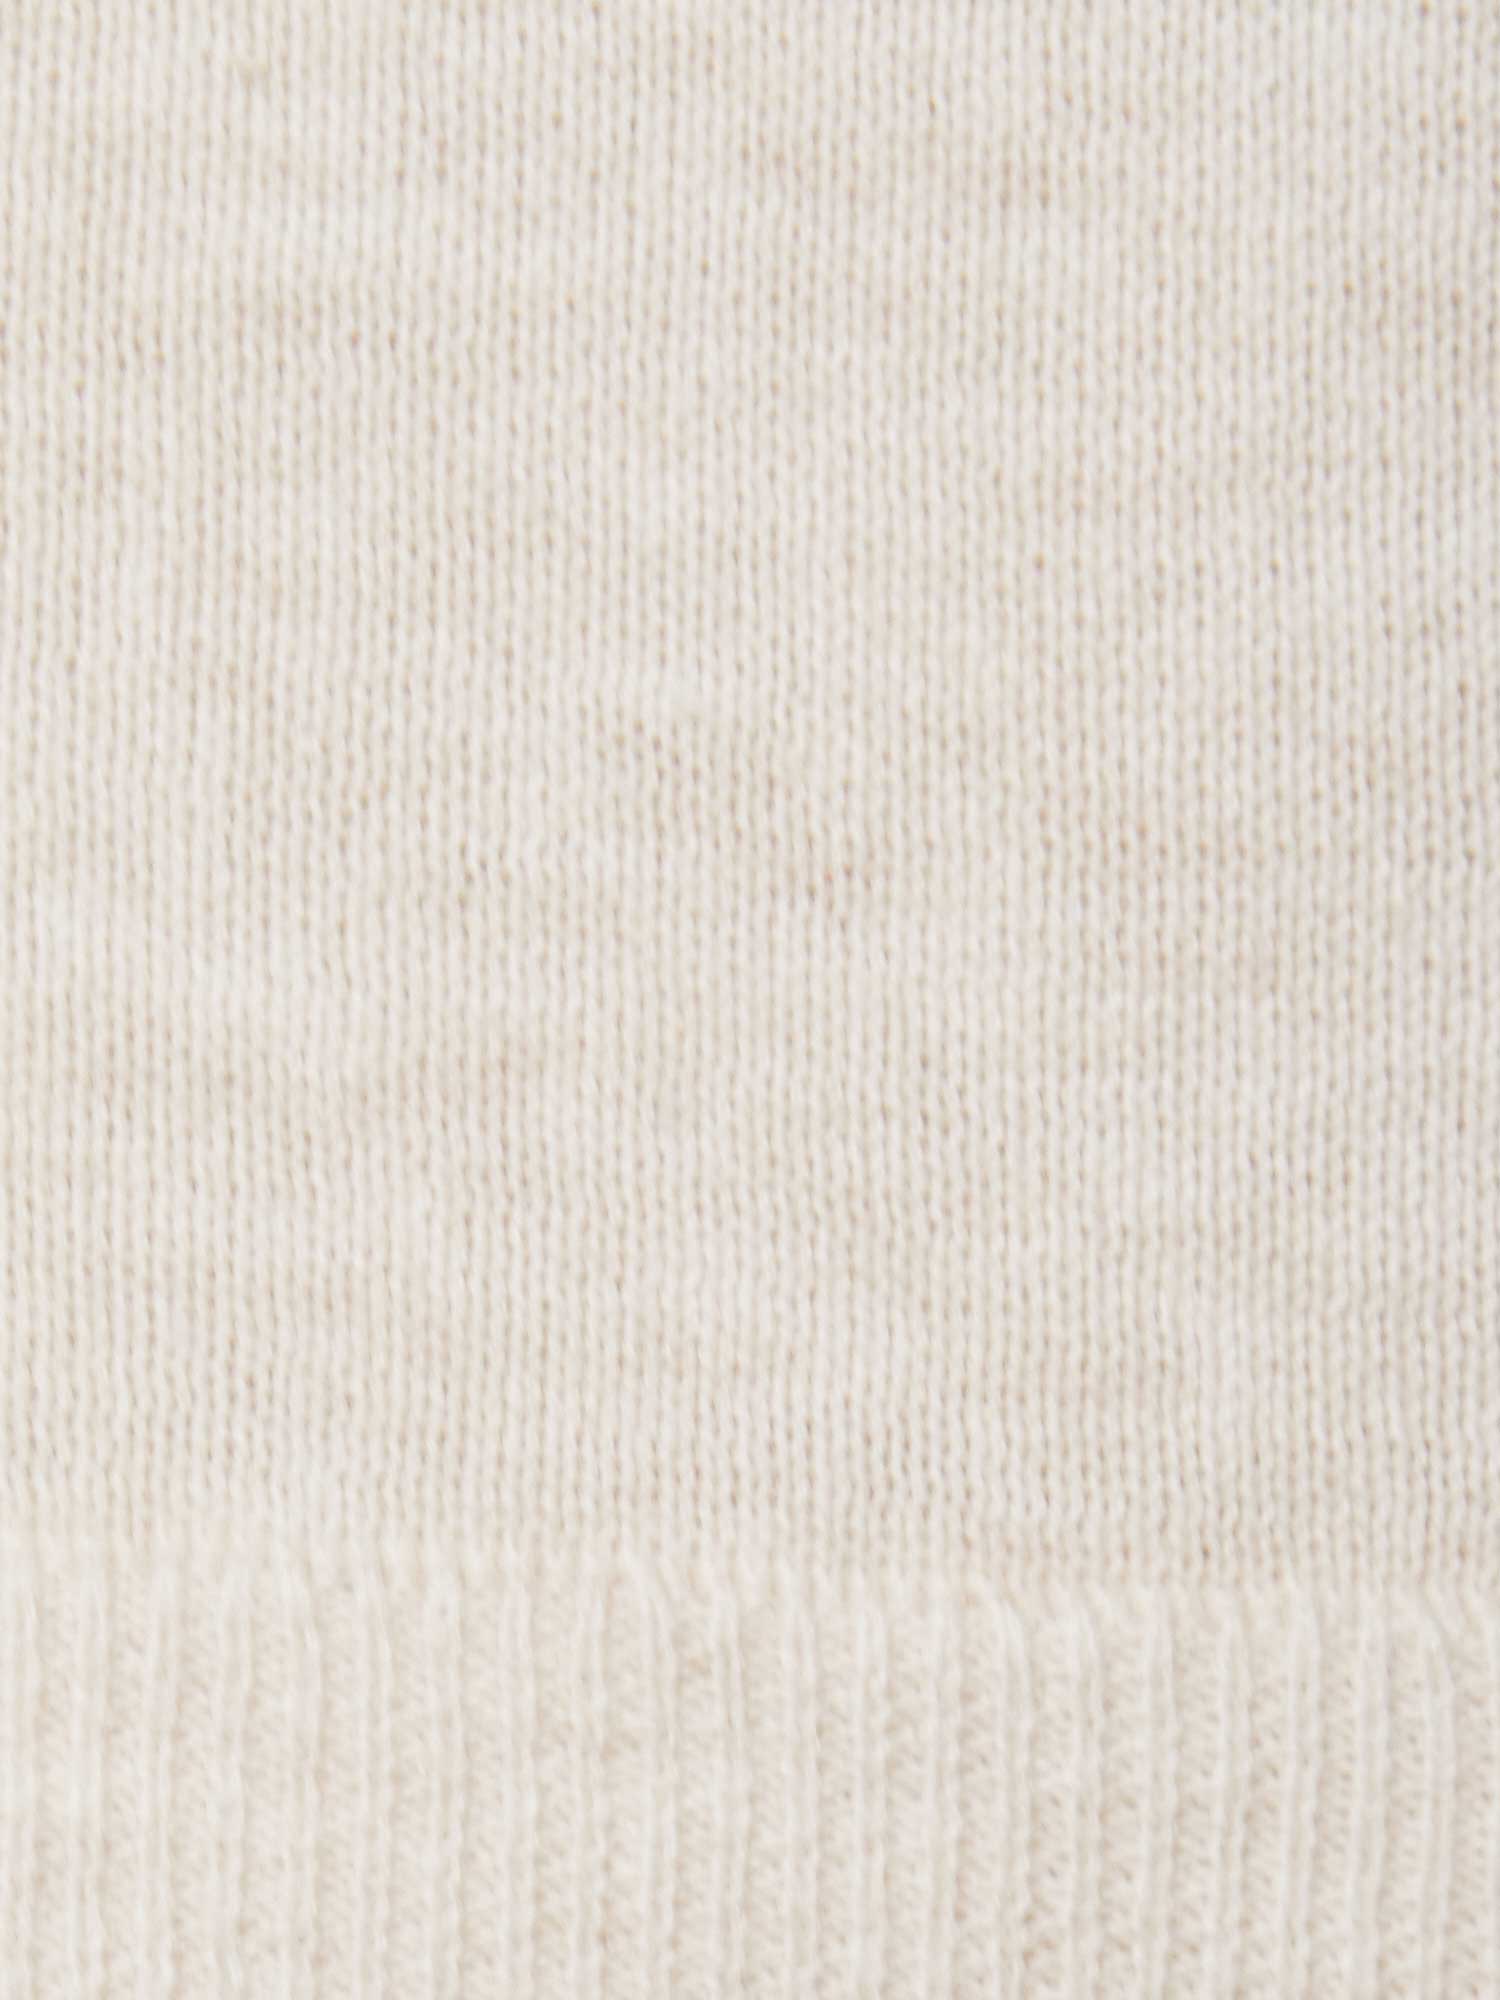 Loreen ivory layered sweater tank close up